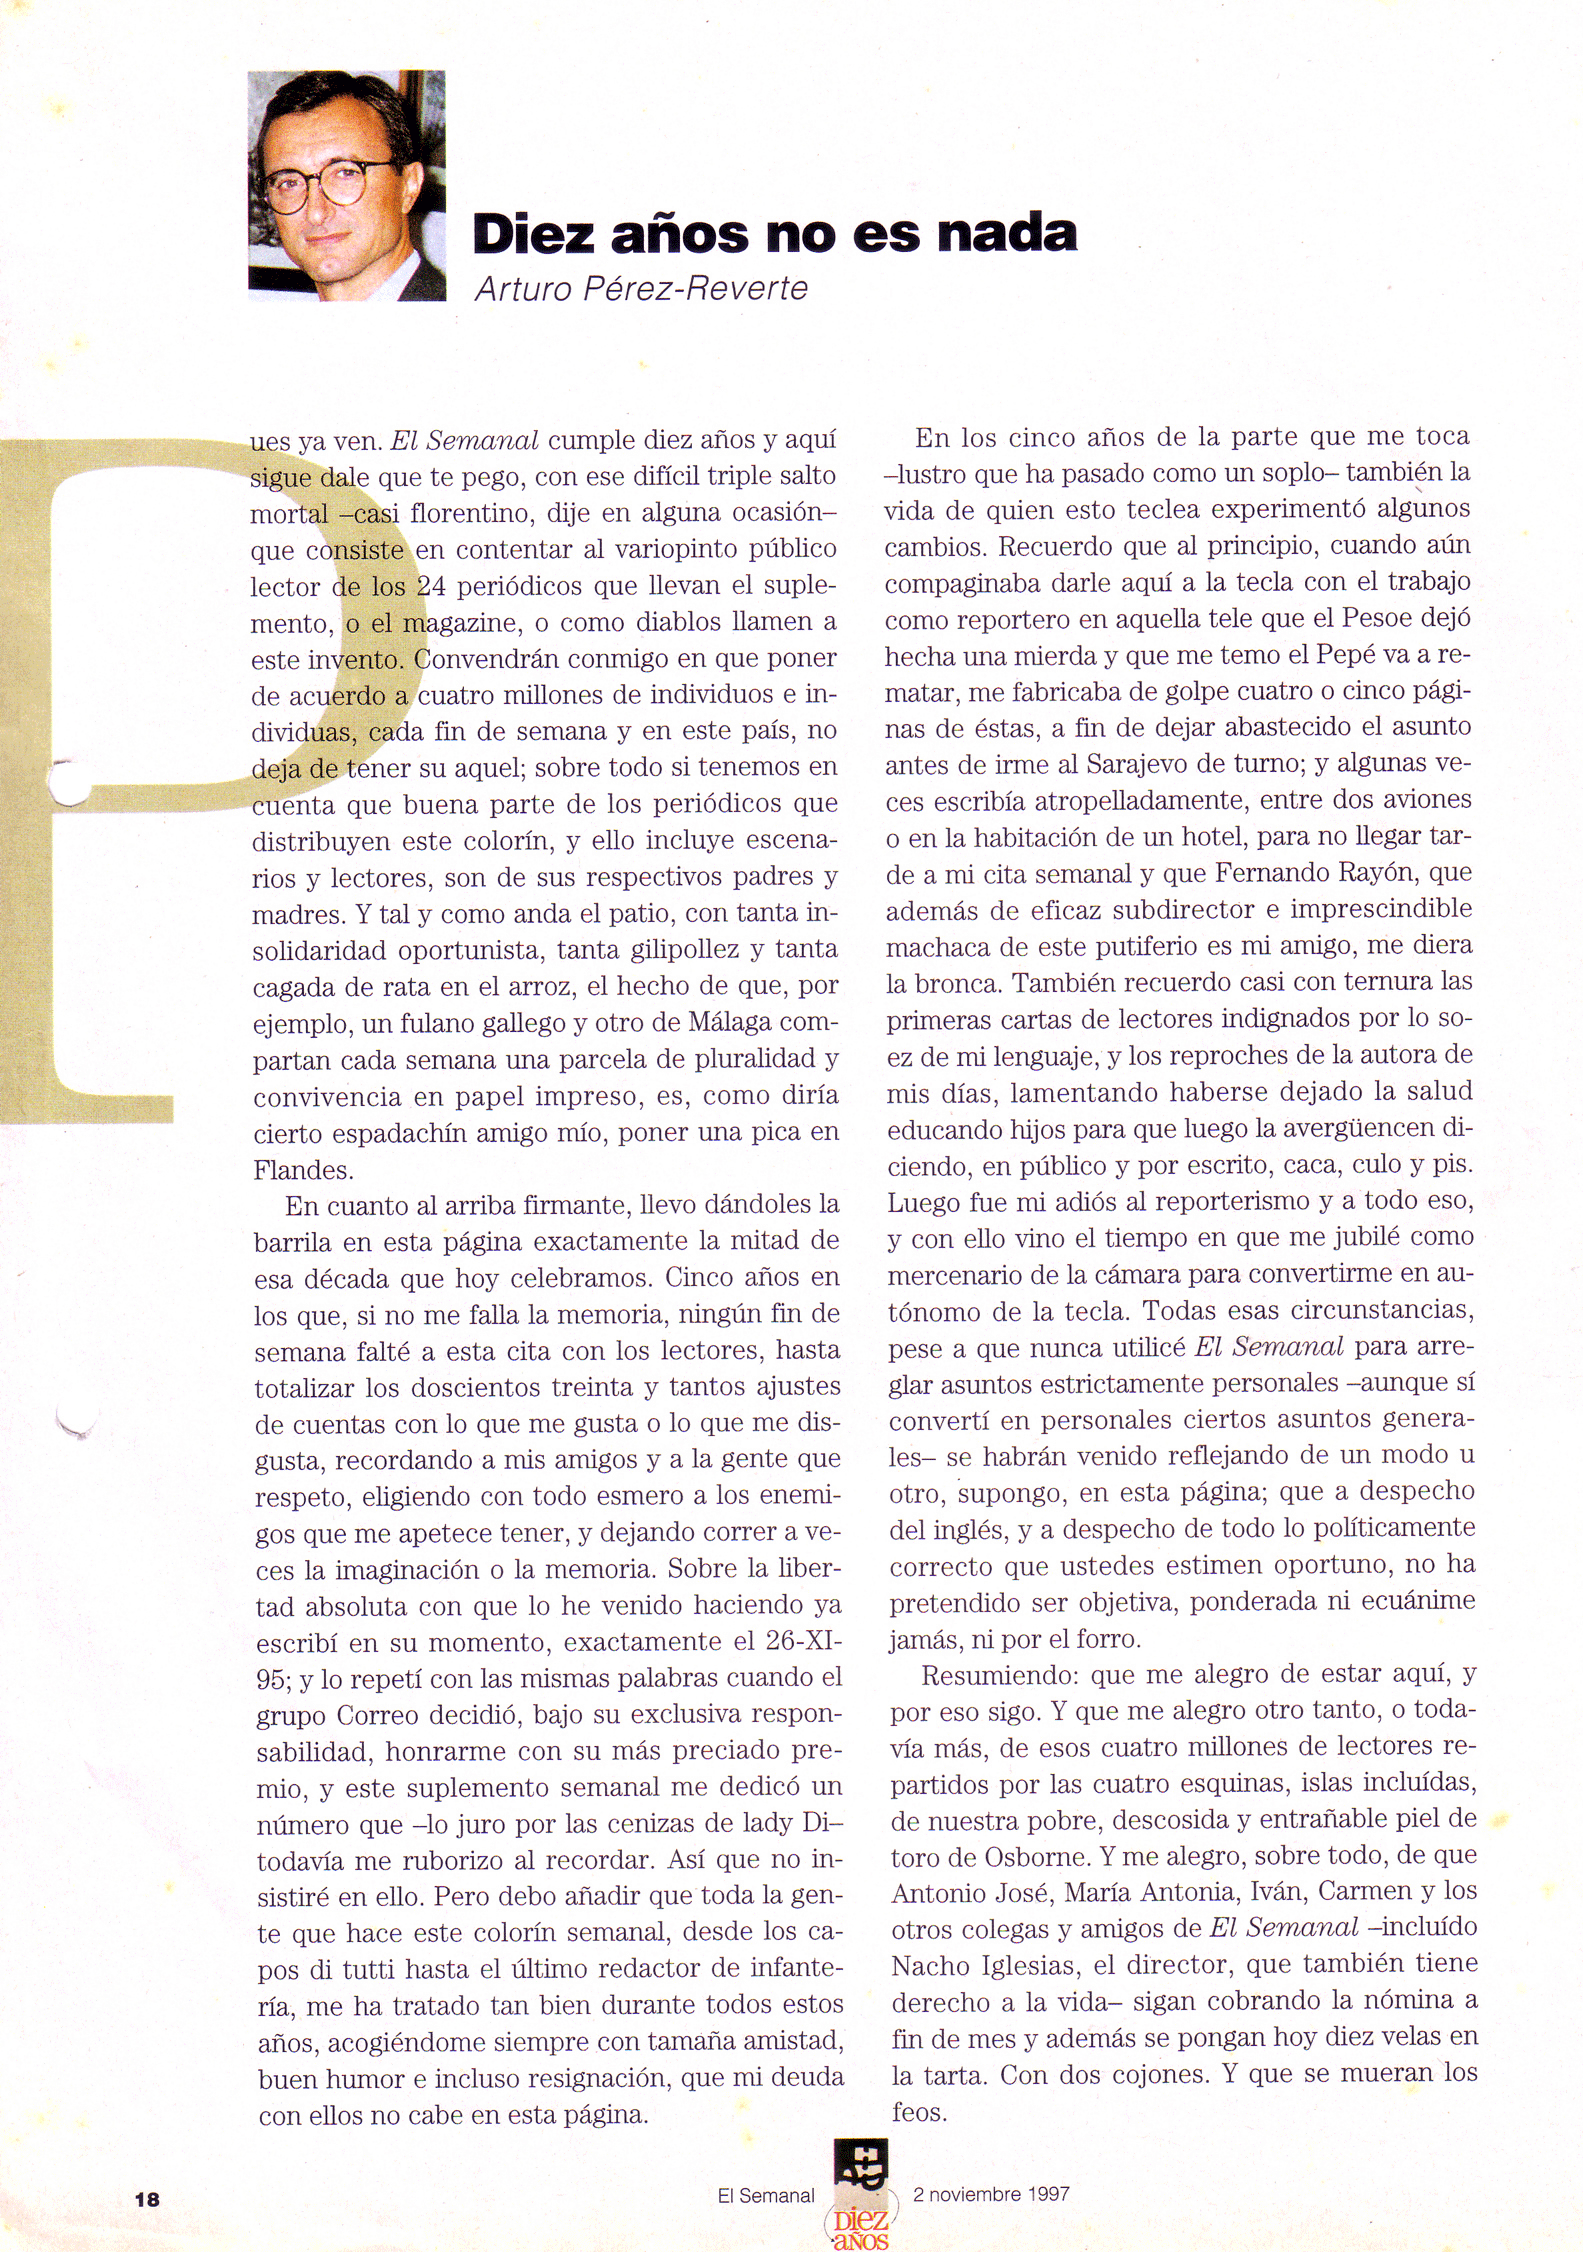 "Diez años no es nada" El Semanal 2 de noviembre de 1997